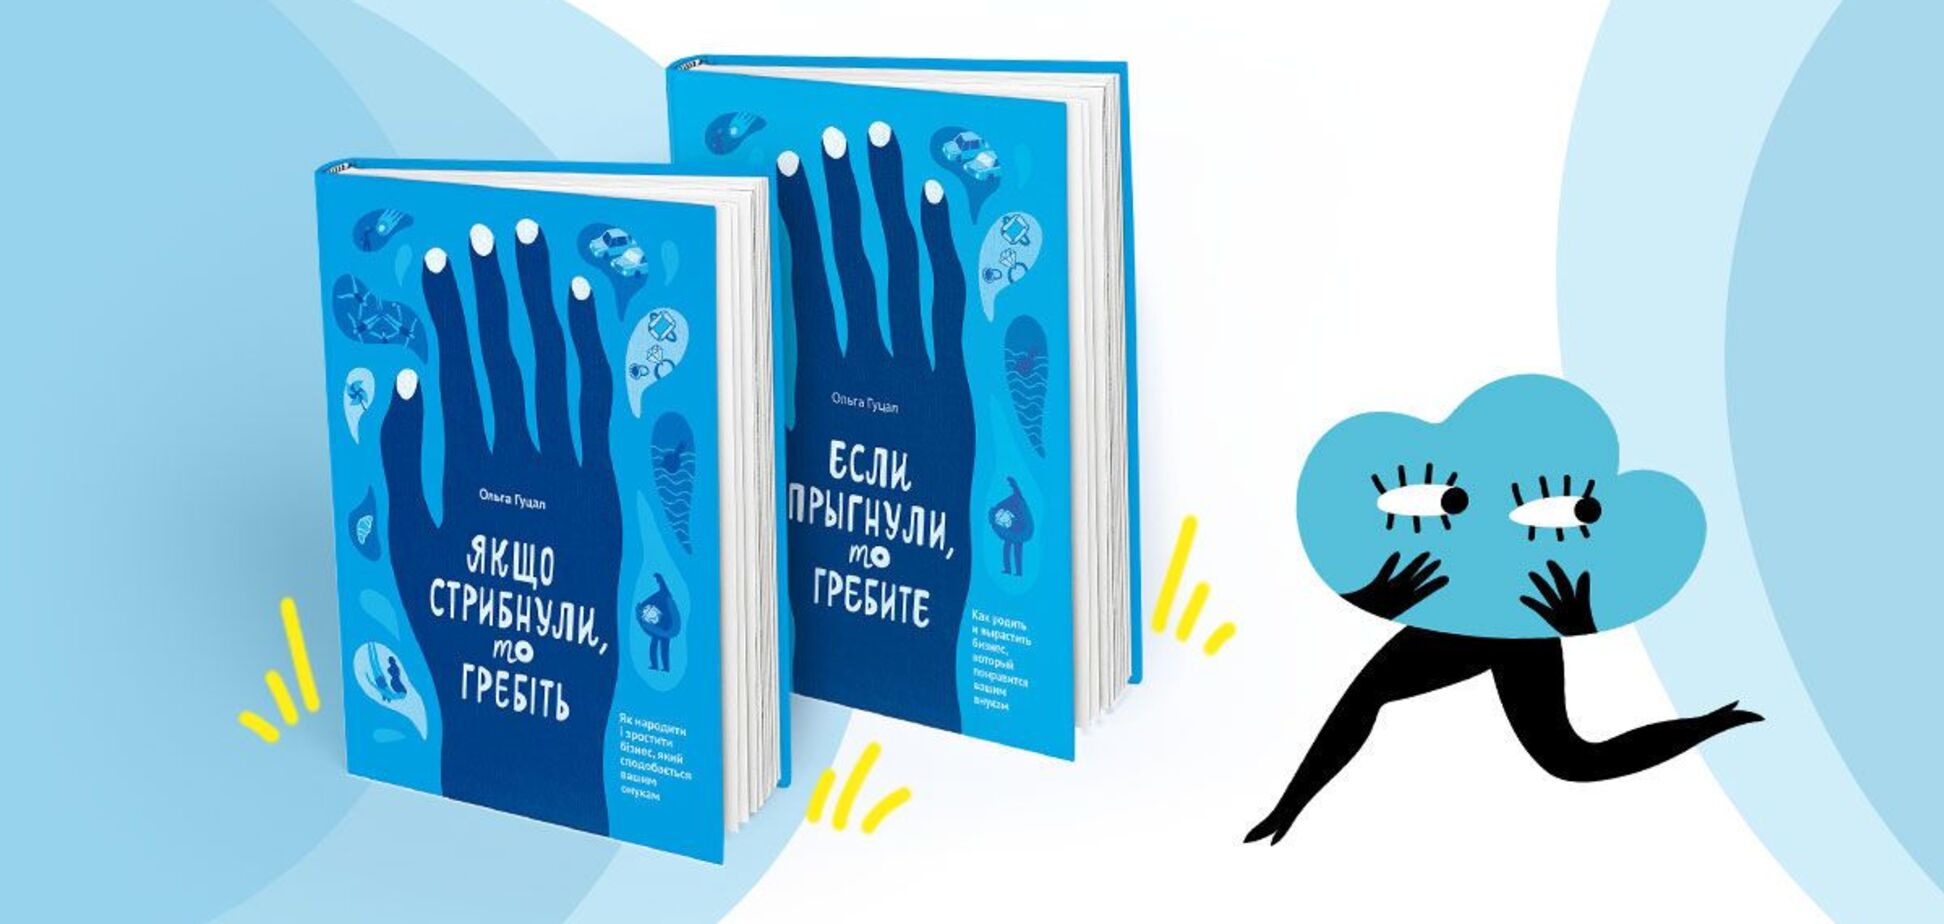 За тиждень продано понад 1000 примірників книги Ольги Гуцал 'Якщо стрибнули, то гребіть'